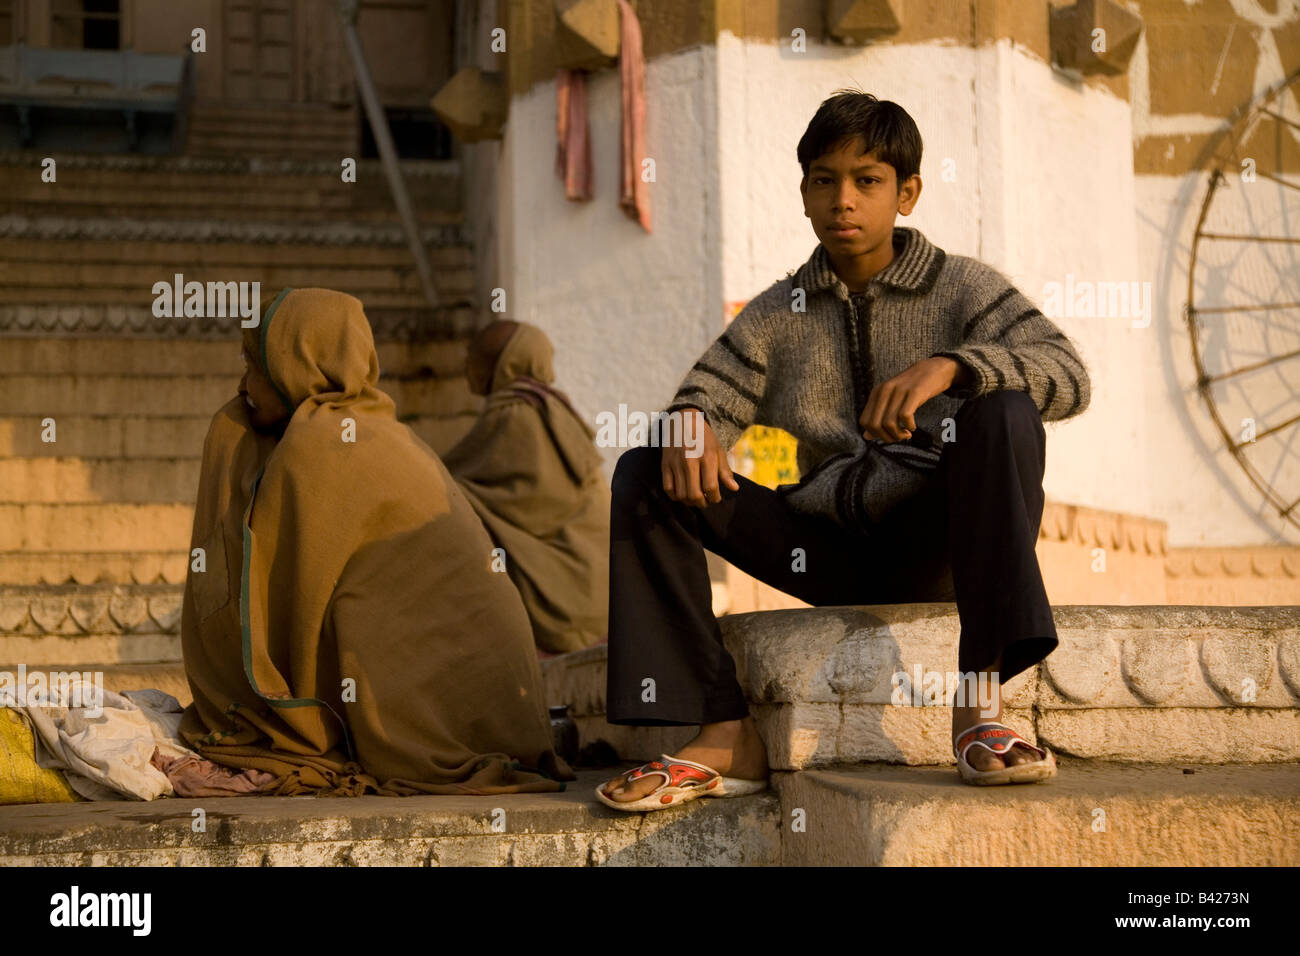 Un garçon est assis sur l'un des Ghats dans la ville de Varanasi, en Inde. Deux hommes wearning capes s'asseoir derrière lui. Banque D'Images